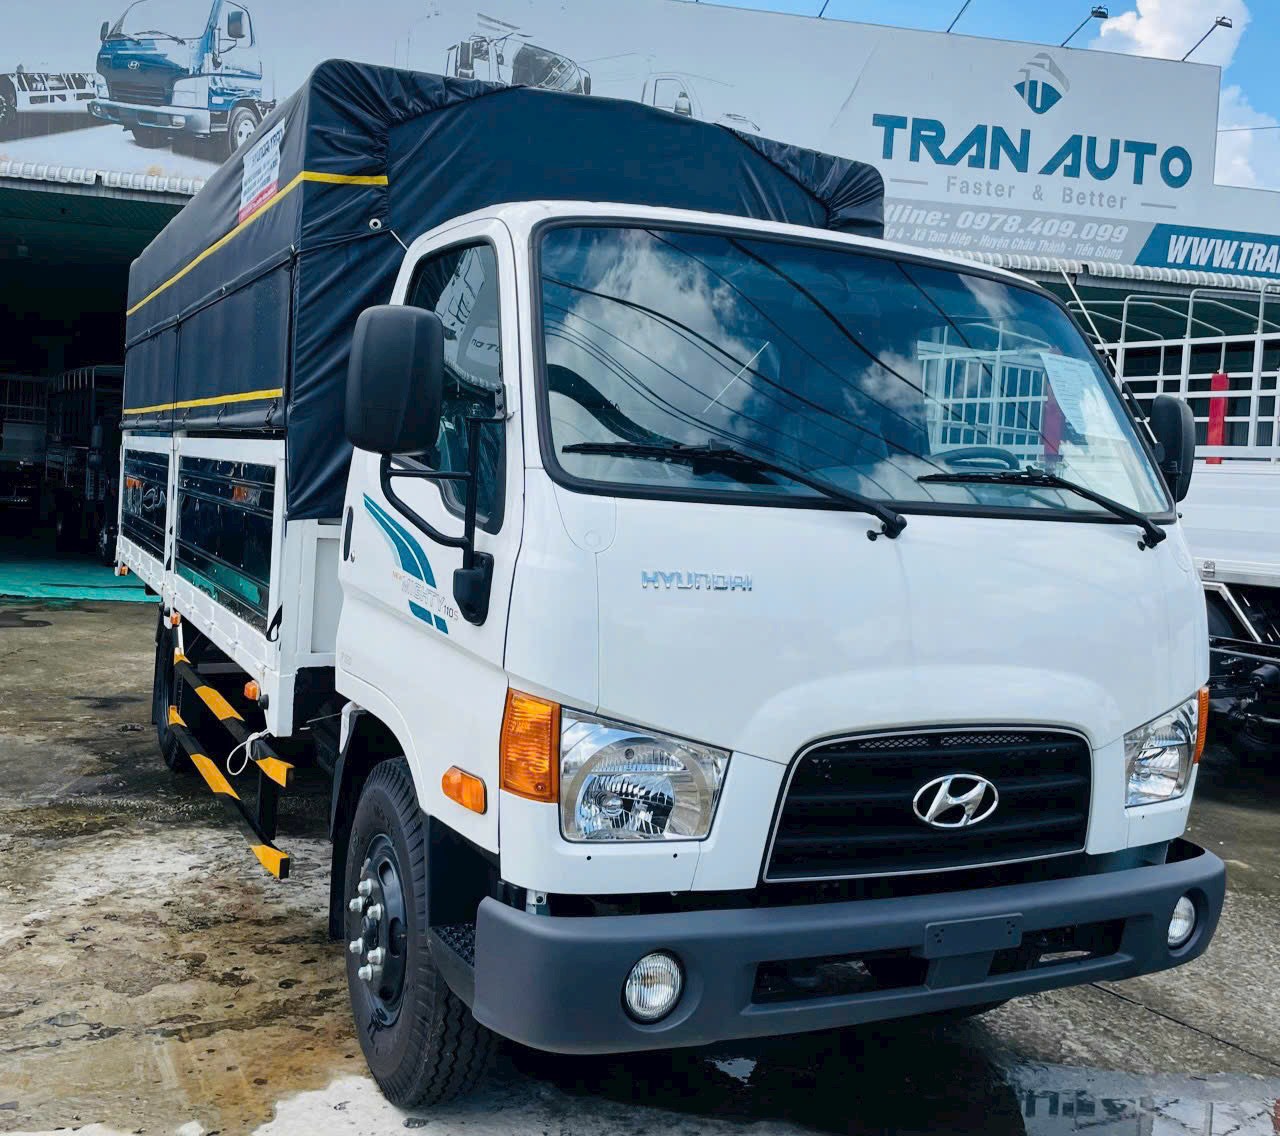 Khám phá sức mạnh của Hyundai New Mighty 110 Series - Giải pháp vận chuyển hàng hoá mạnh mẽ và hiệu quả!